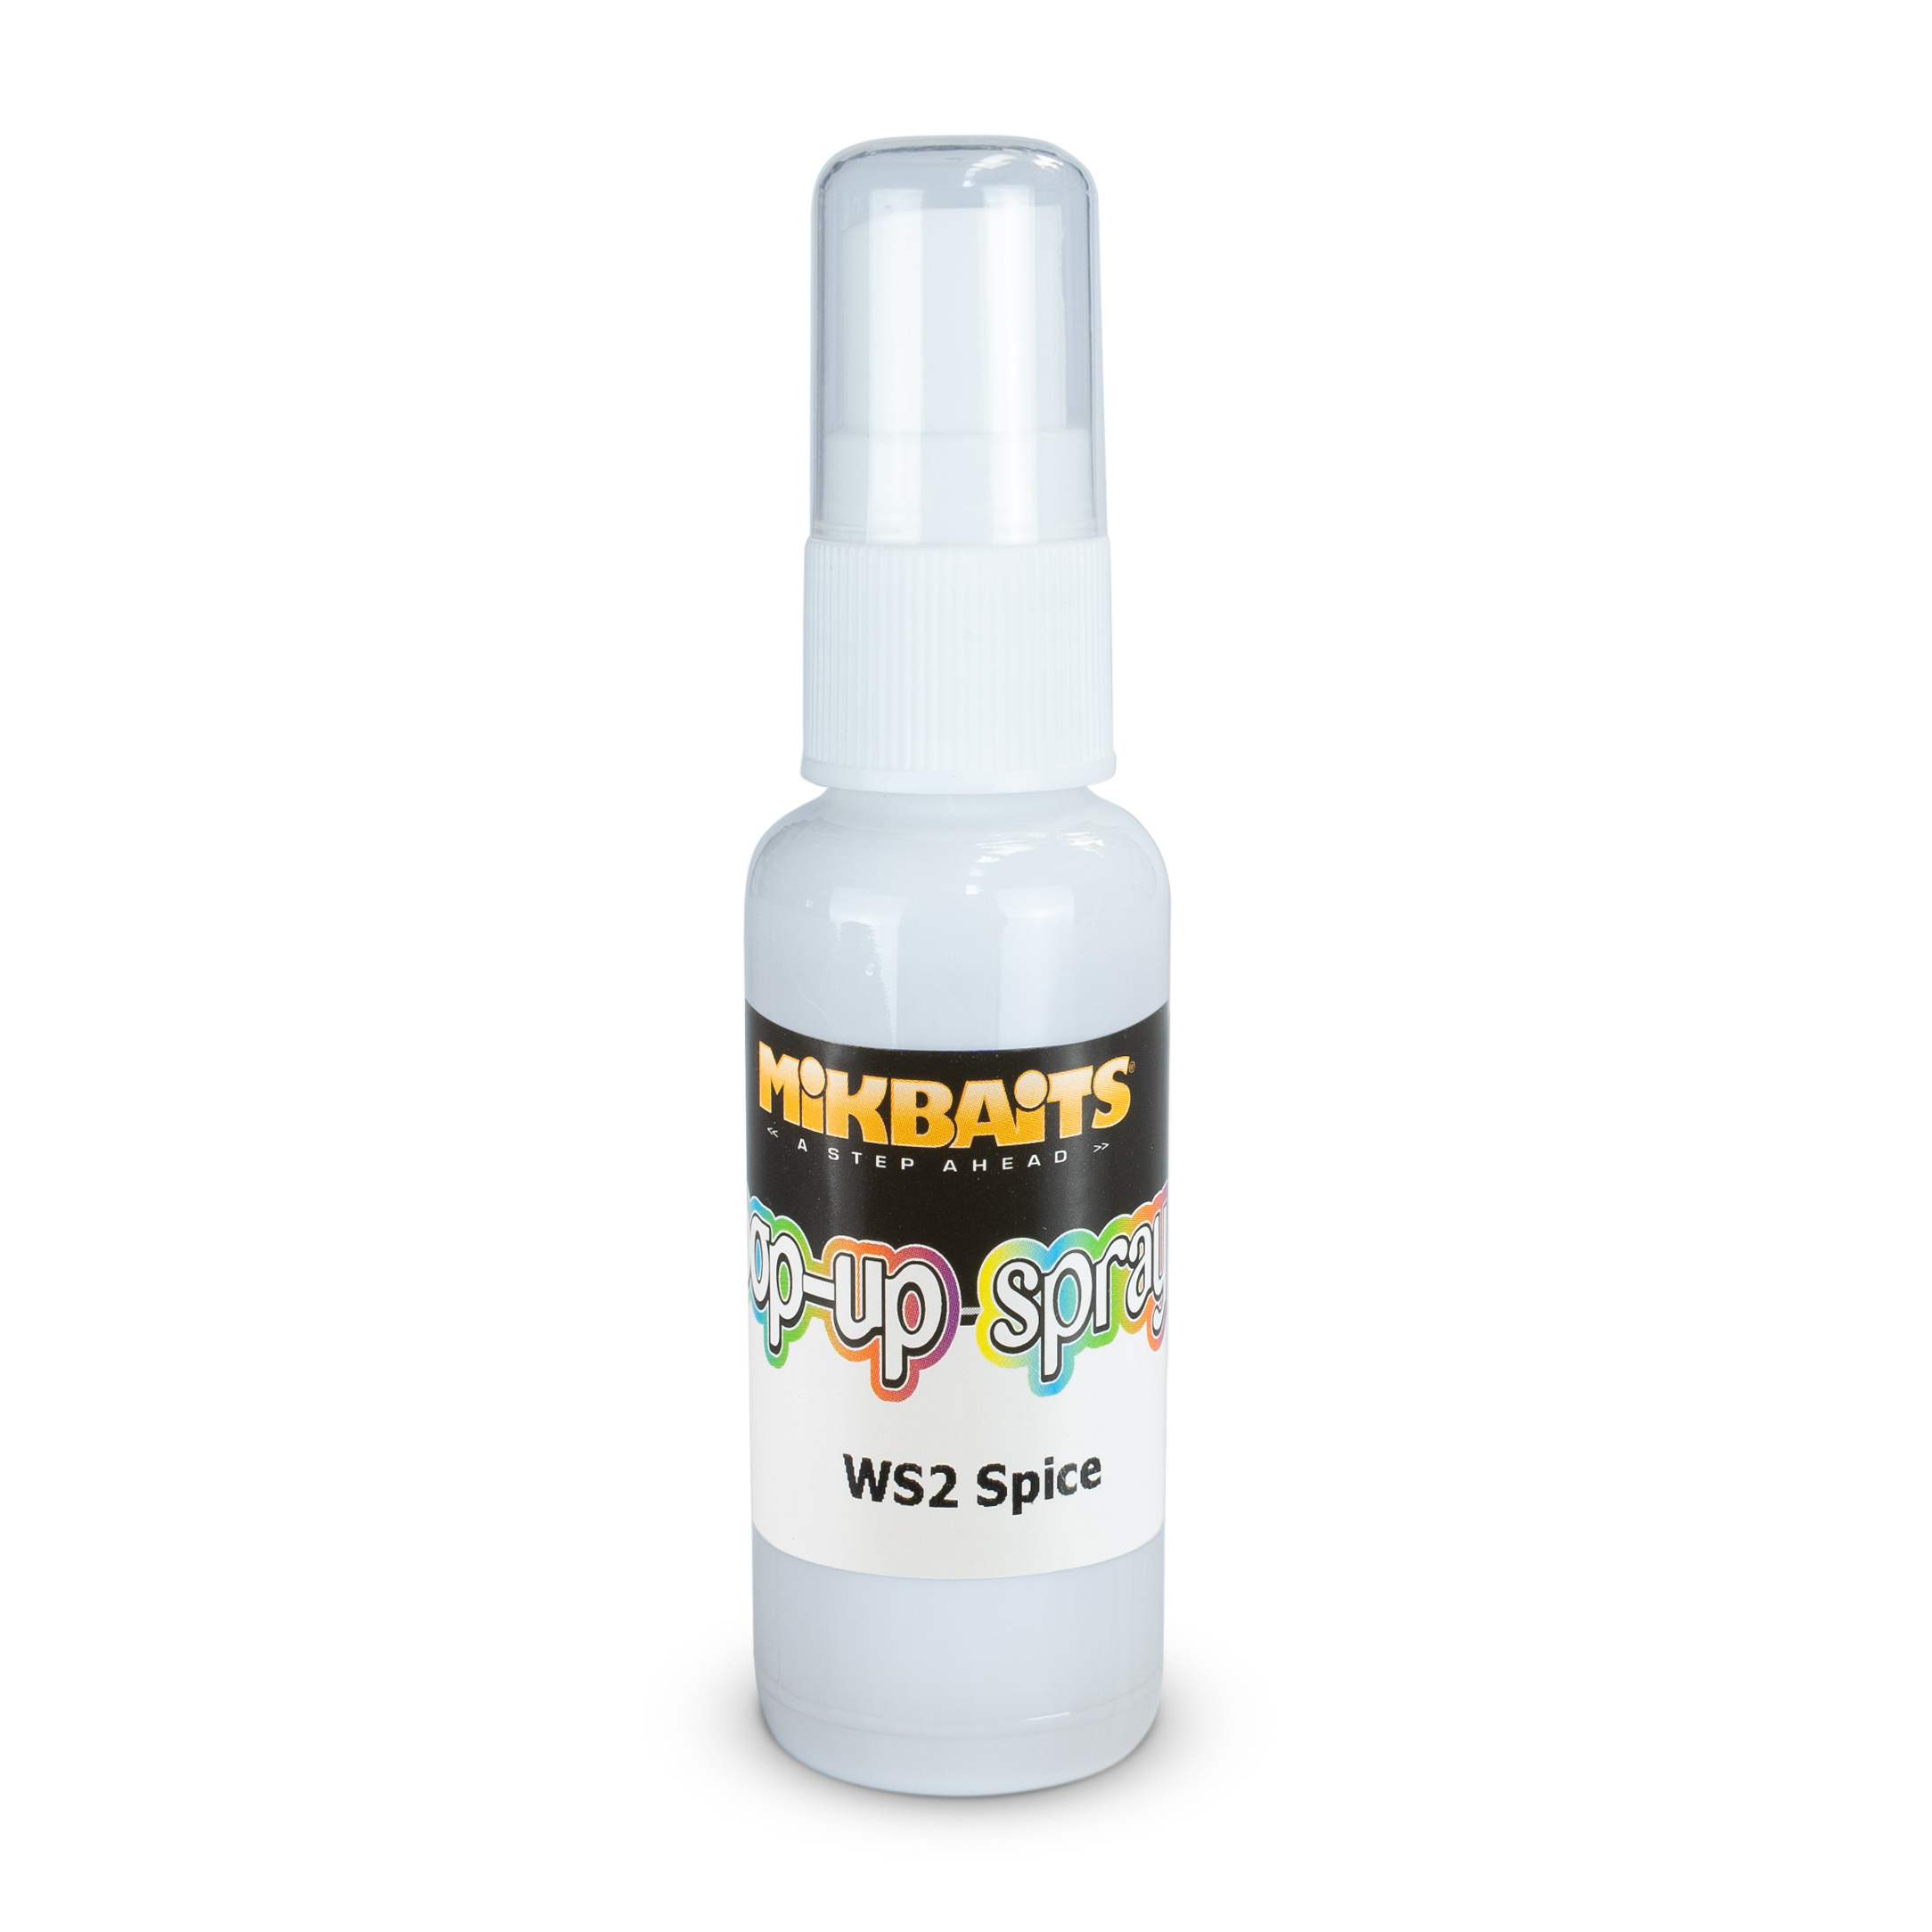 Mikbaits pop-up spray 30ml Příchuť: WS2 Spice